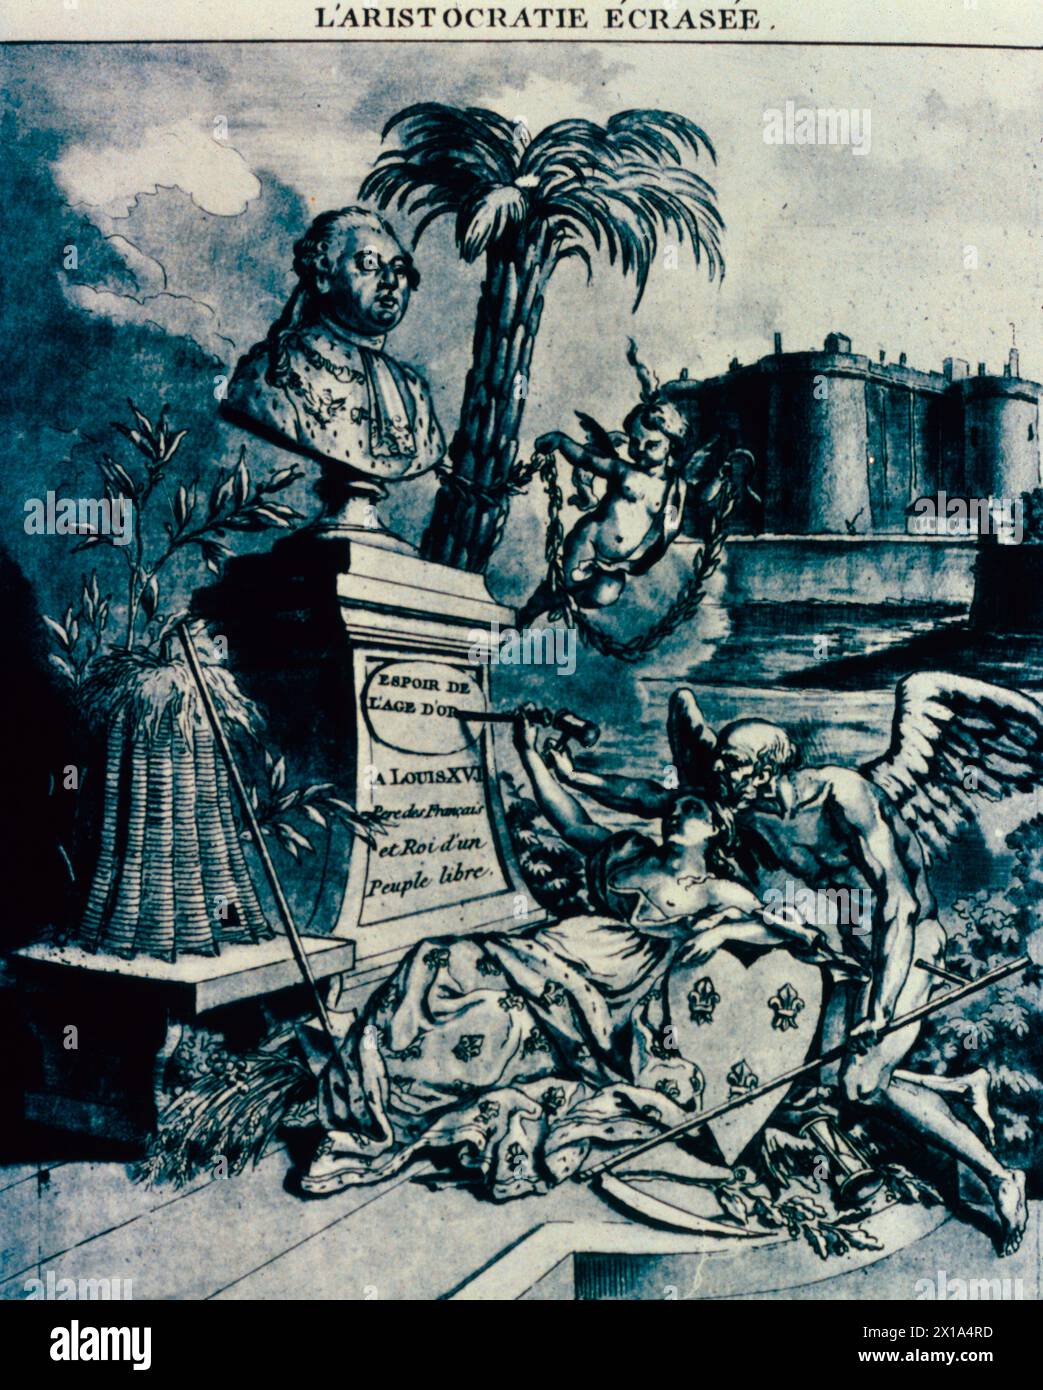 Aristokratie zerschmettert, Cartoon, in dem Ludwig XVI. Als Befreier des französischen Volkes gefeiert wird, Frankreich 1791 Stockfoto